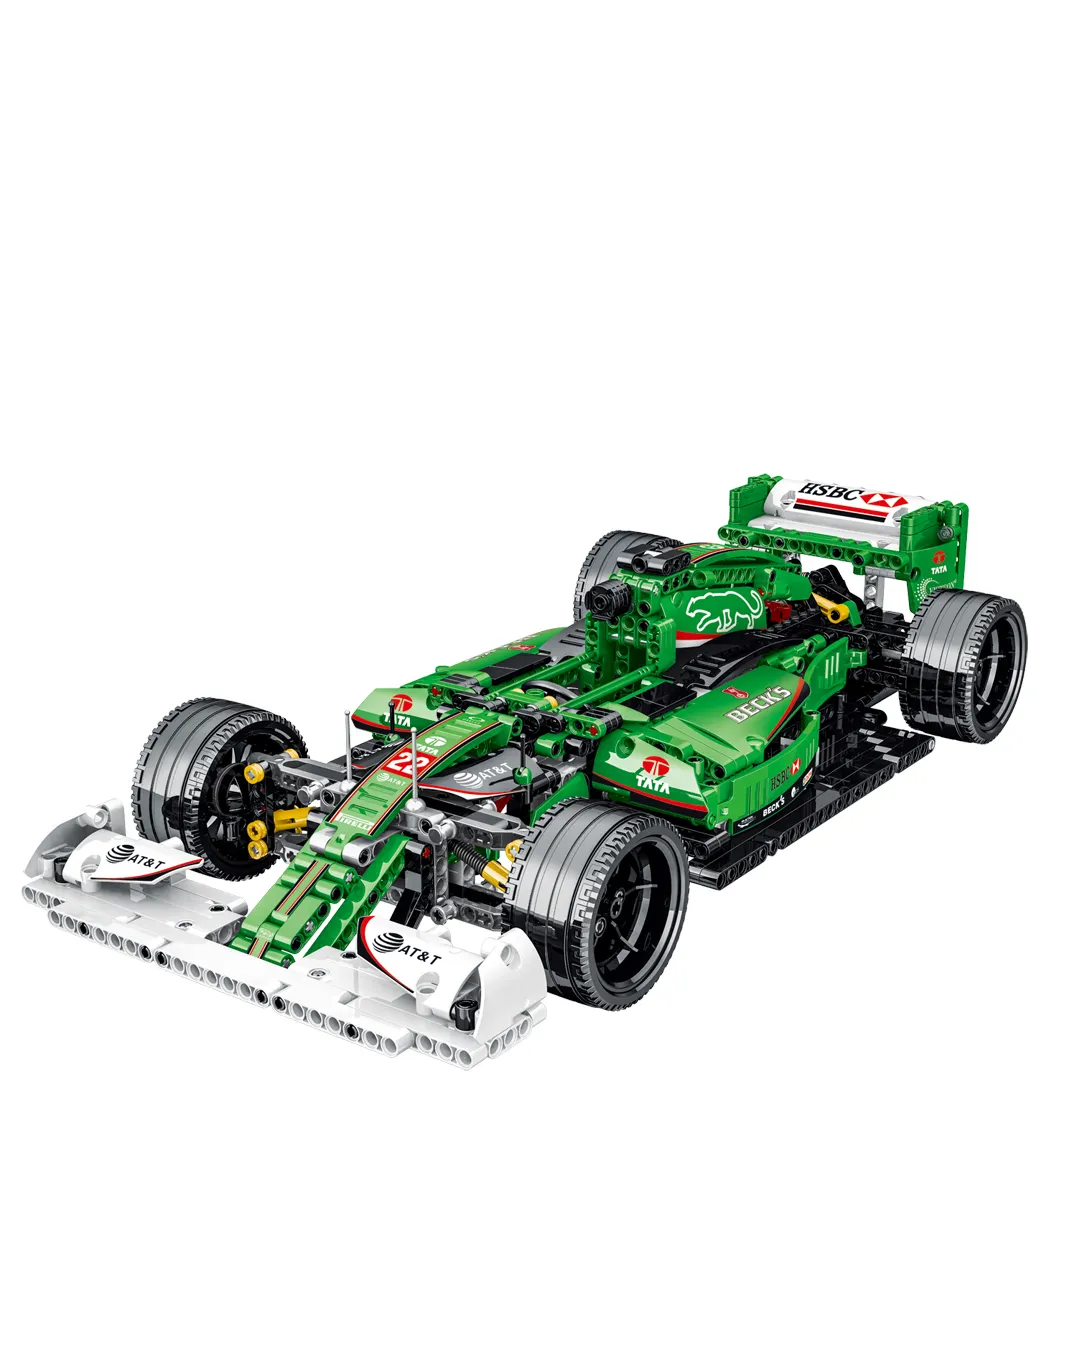 R5スポーツカーシミュレーション1:14モデルアセンブリレンガステムDIYRCアセンブリおもちゃの車